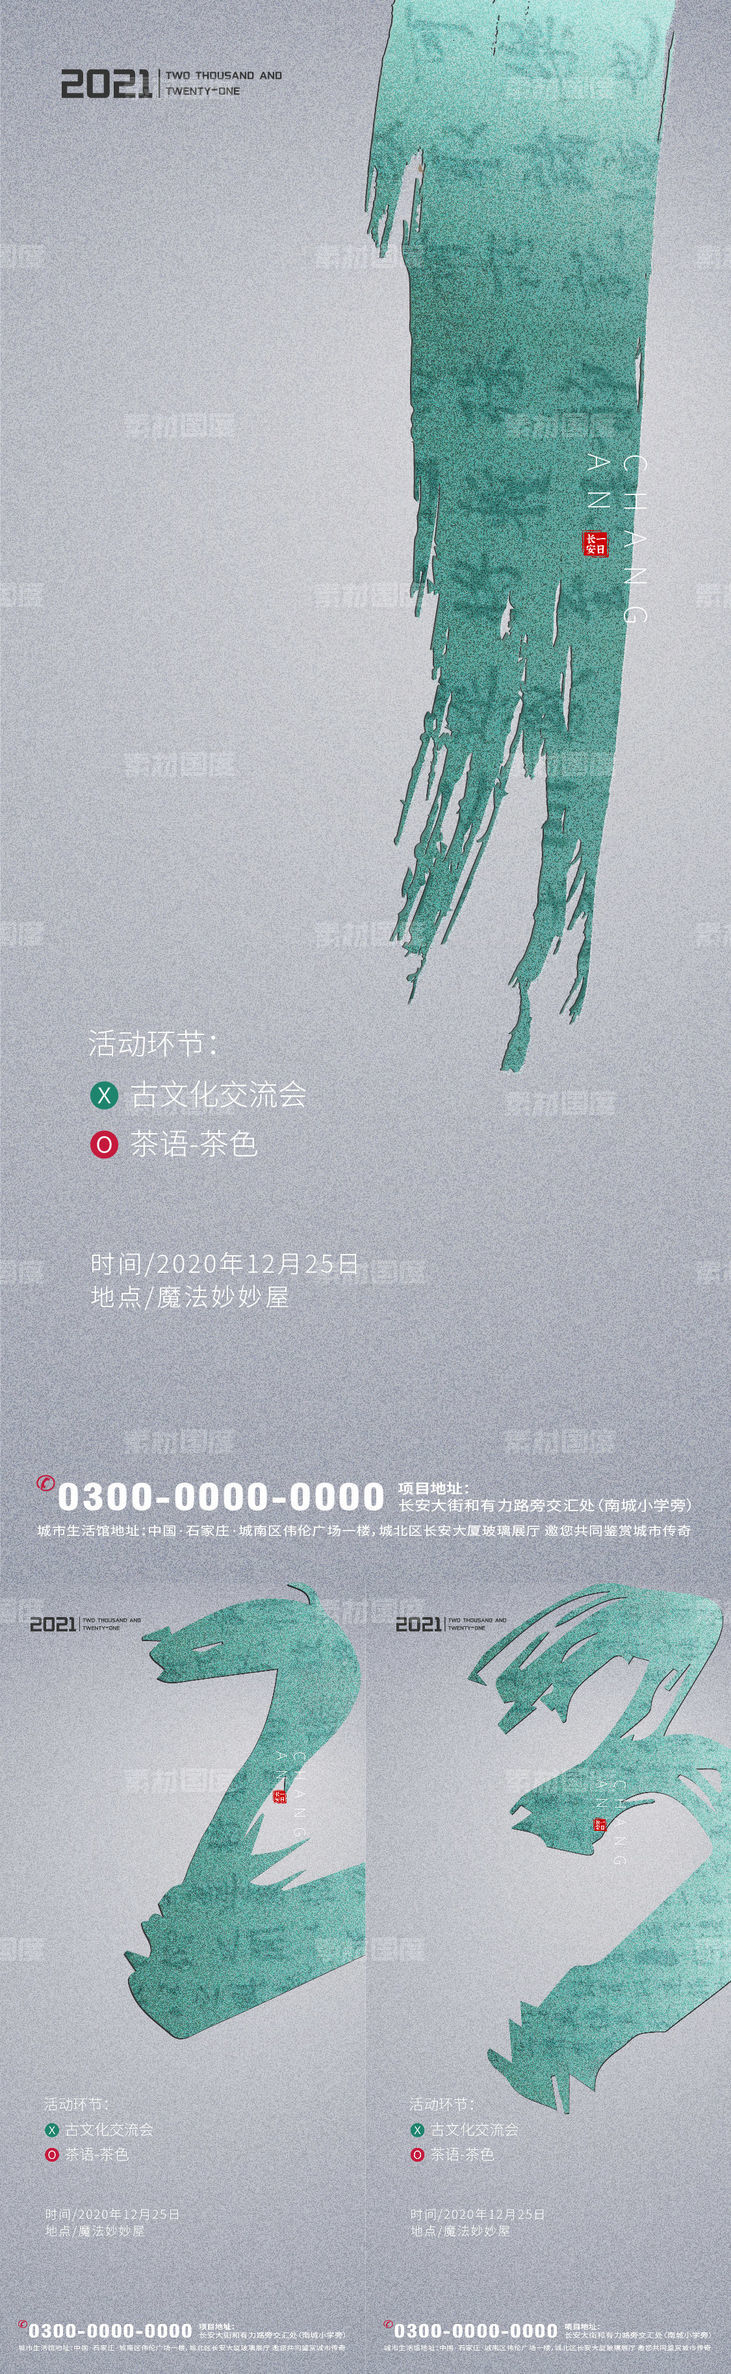 中式书法倒计时海报